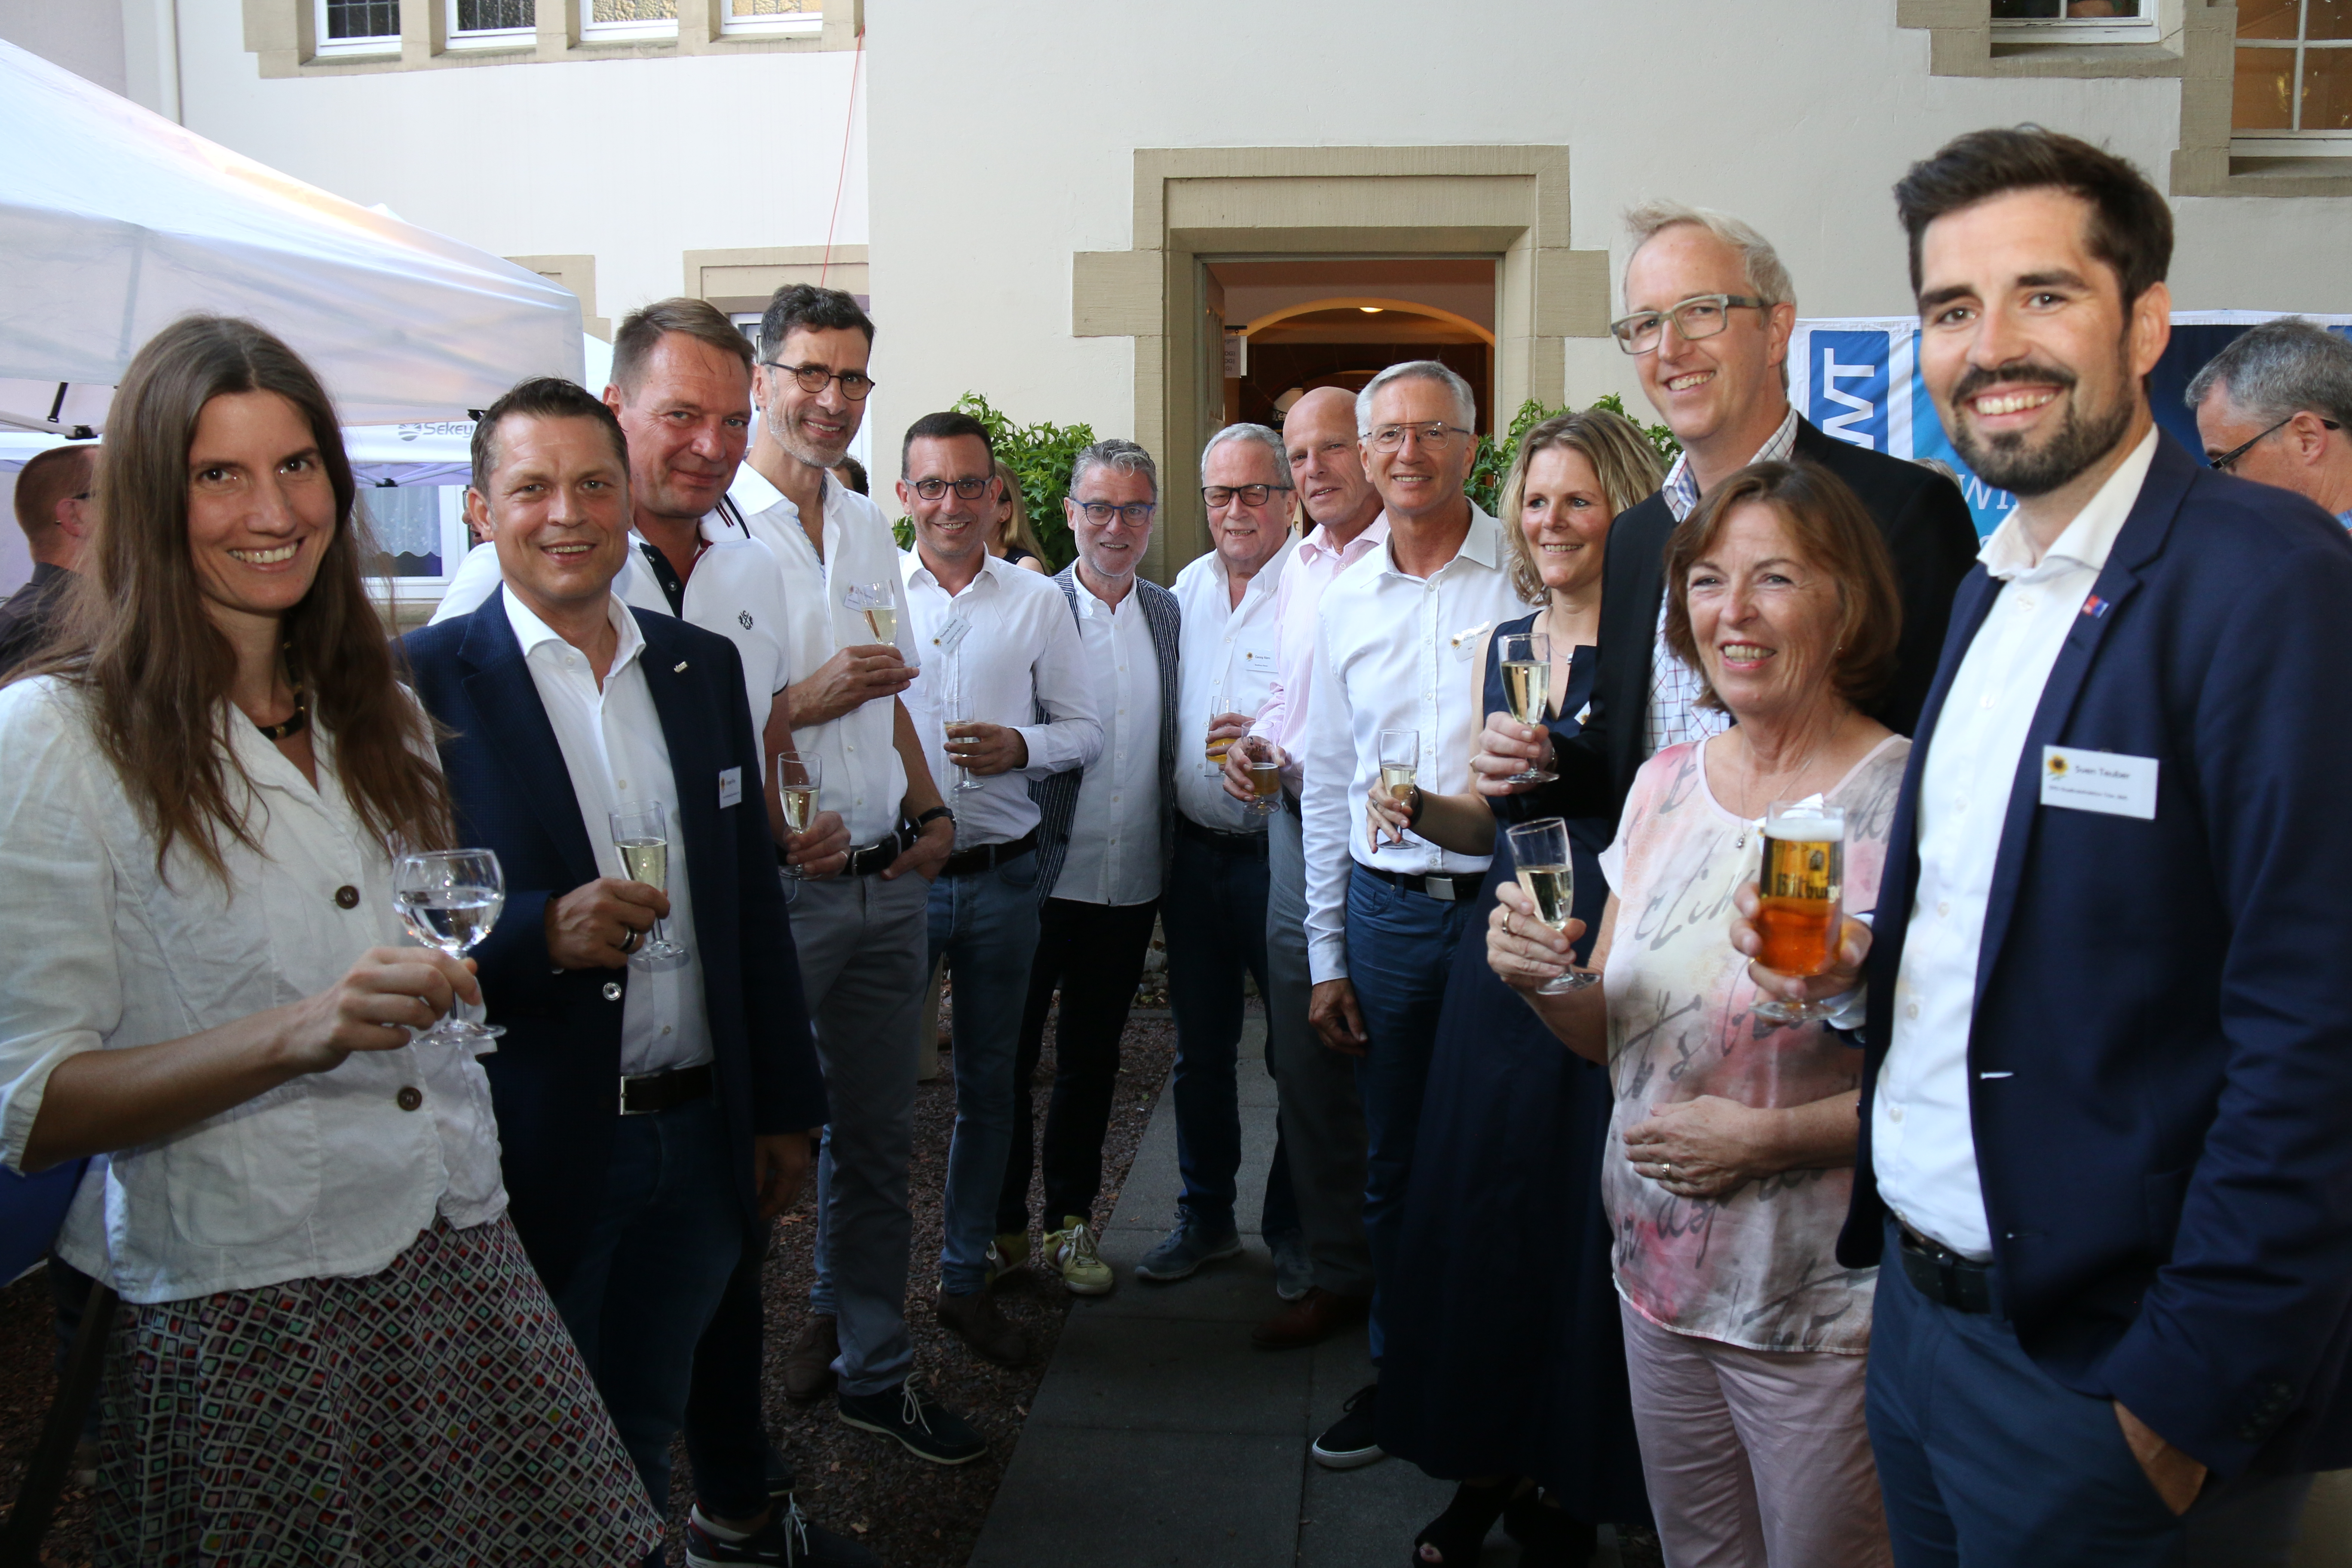 Sommerfest 2019 "Politik trifft Handel"